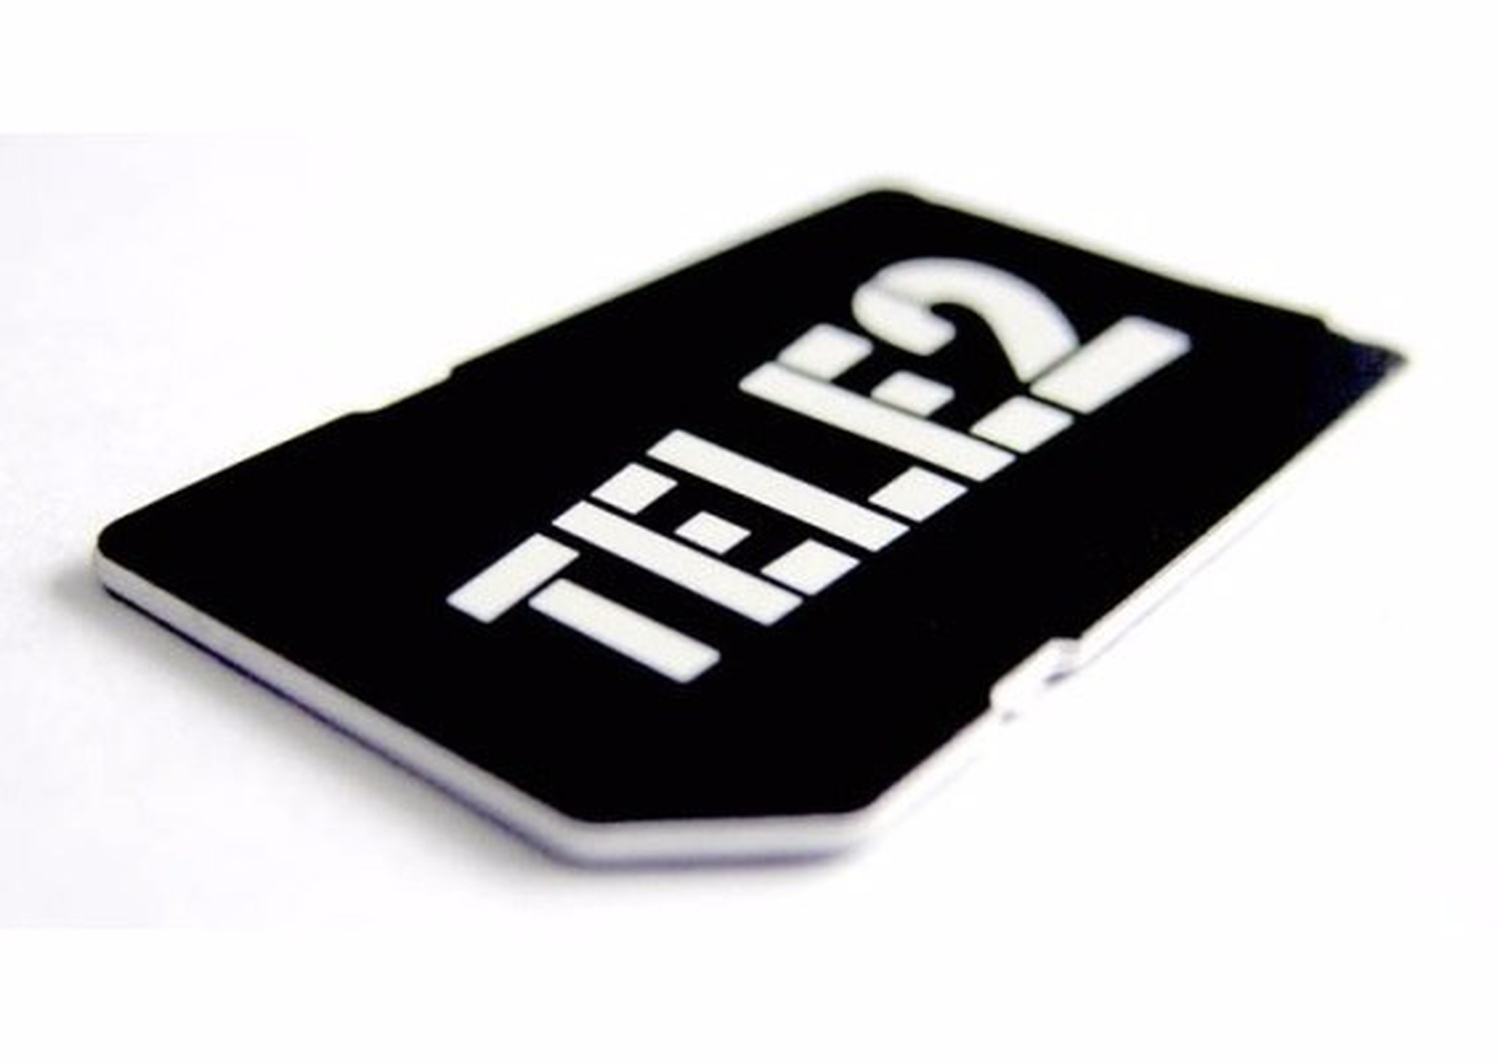 Бесплатные симки теле2. Симка теле2 300 гигабайт. SIM карта теле2. Логотип теле2 сим. Упаковка сим карты теле2.